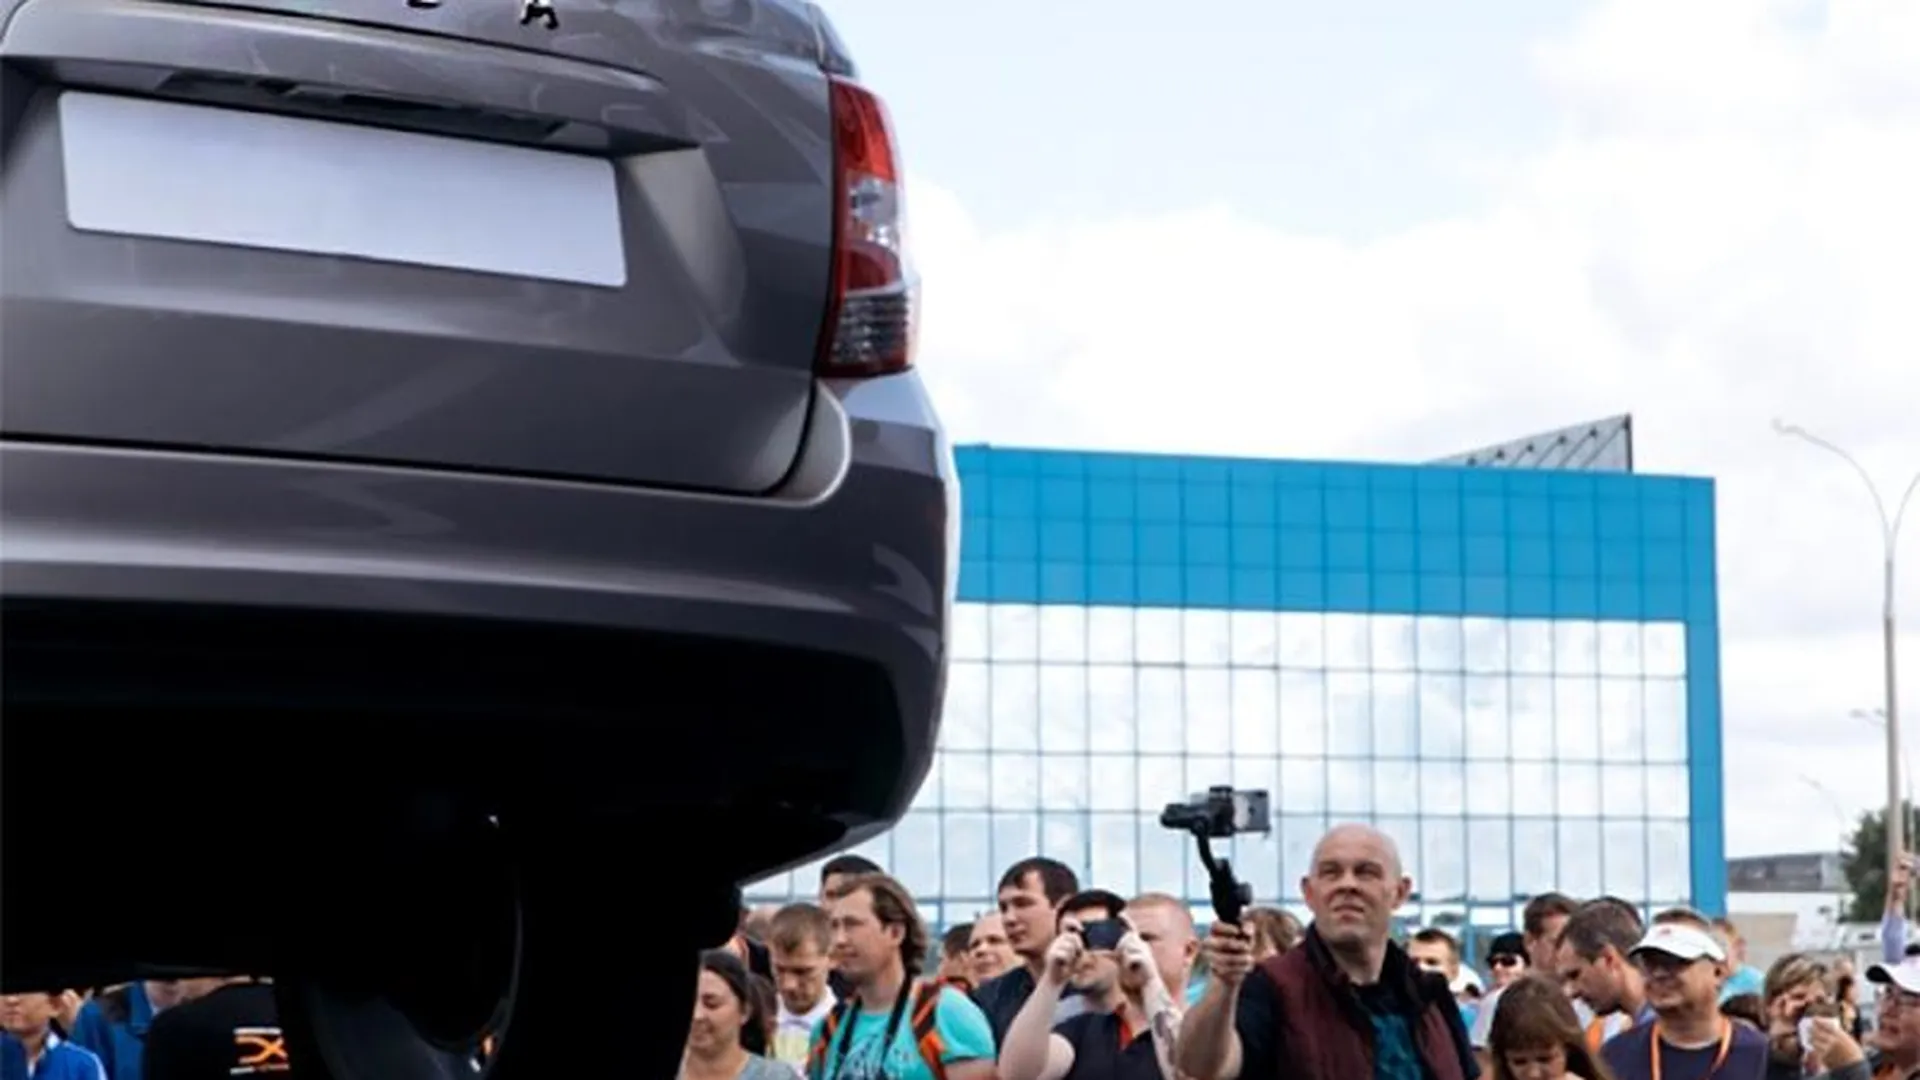 Друг и АвтоВОЗ: жители Подмосковья предложили названия для новых моделей Lada